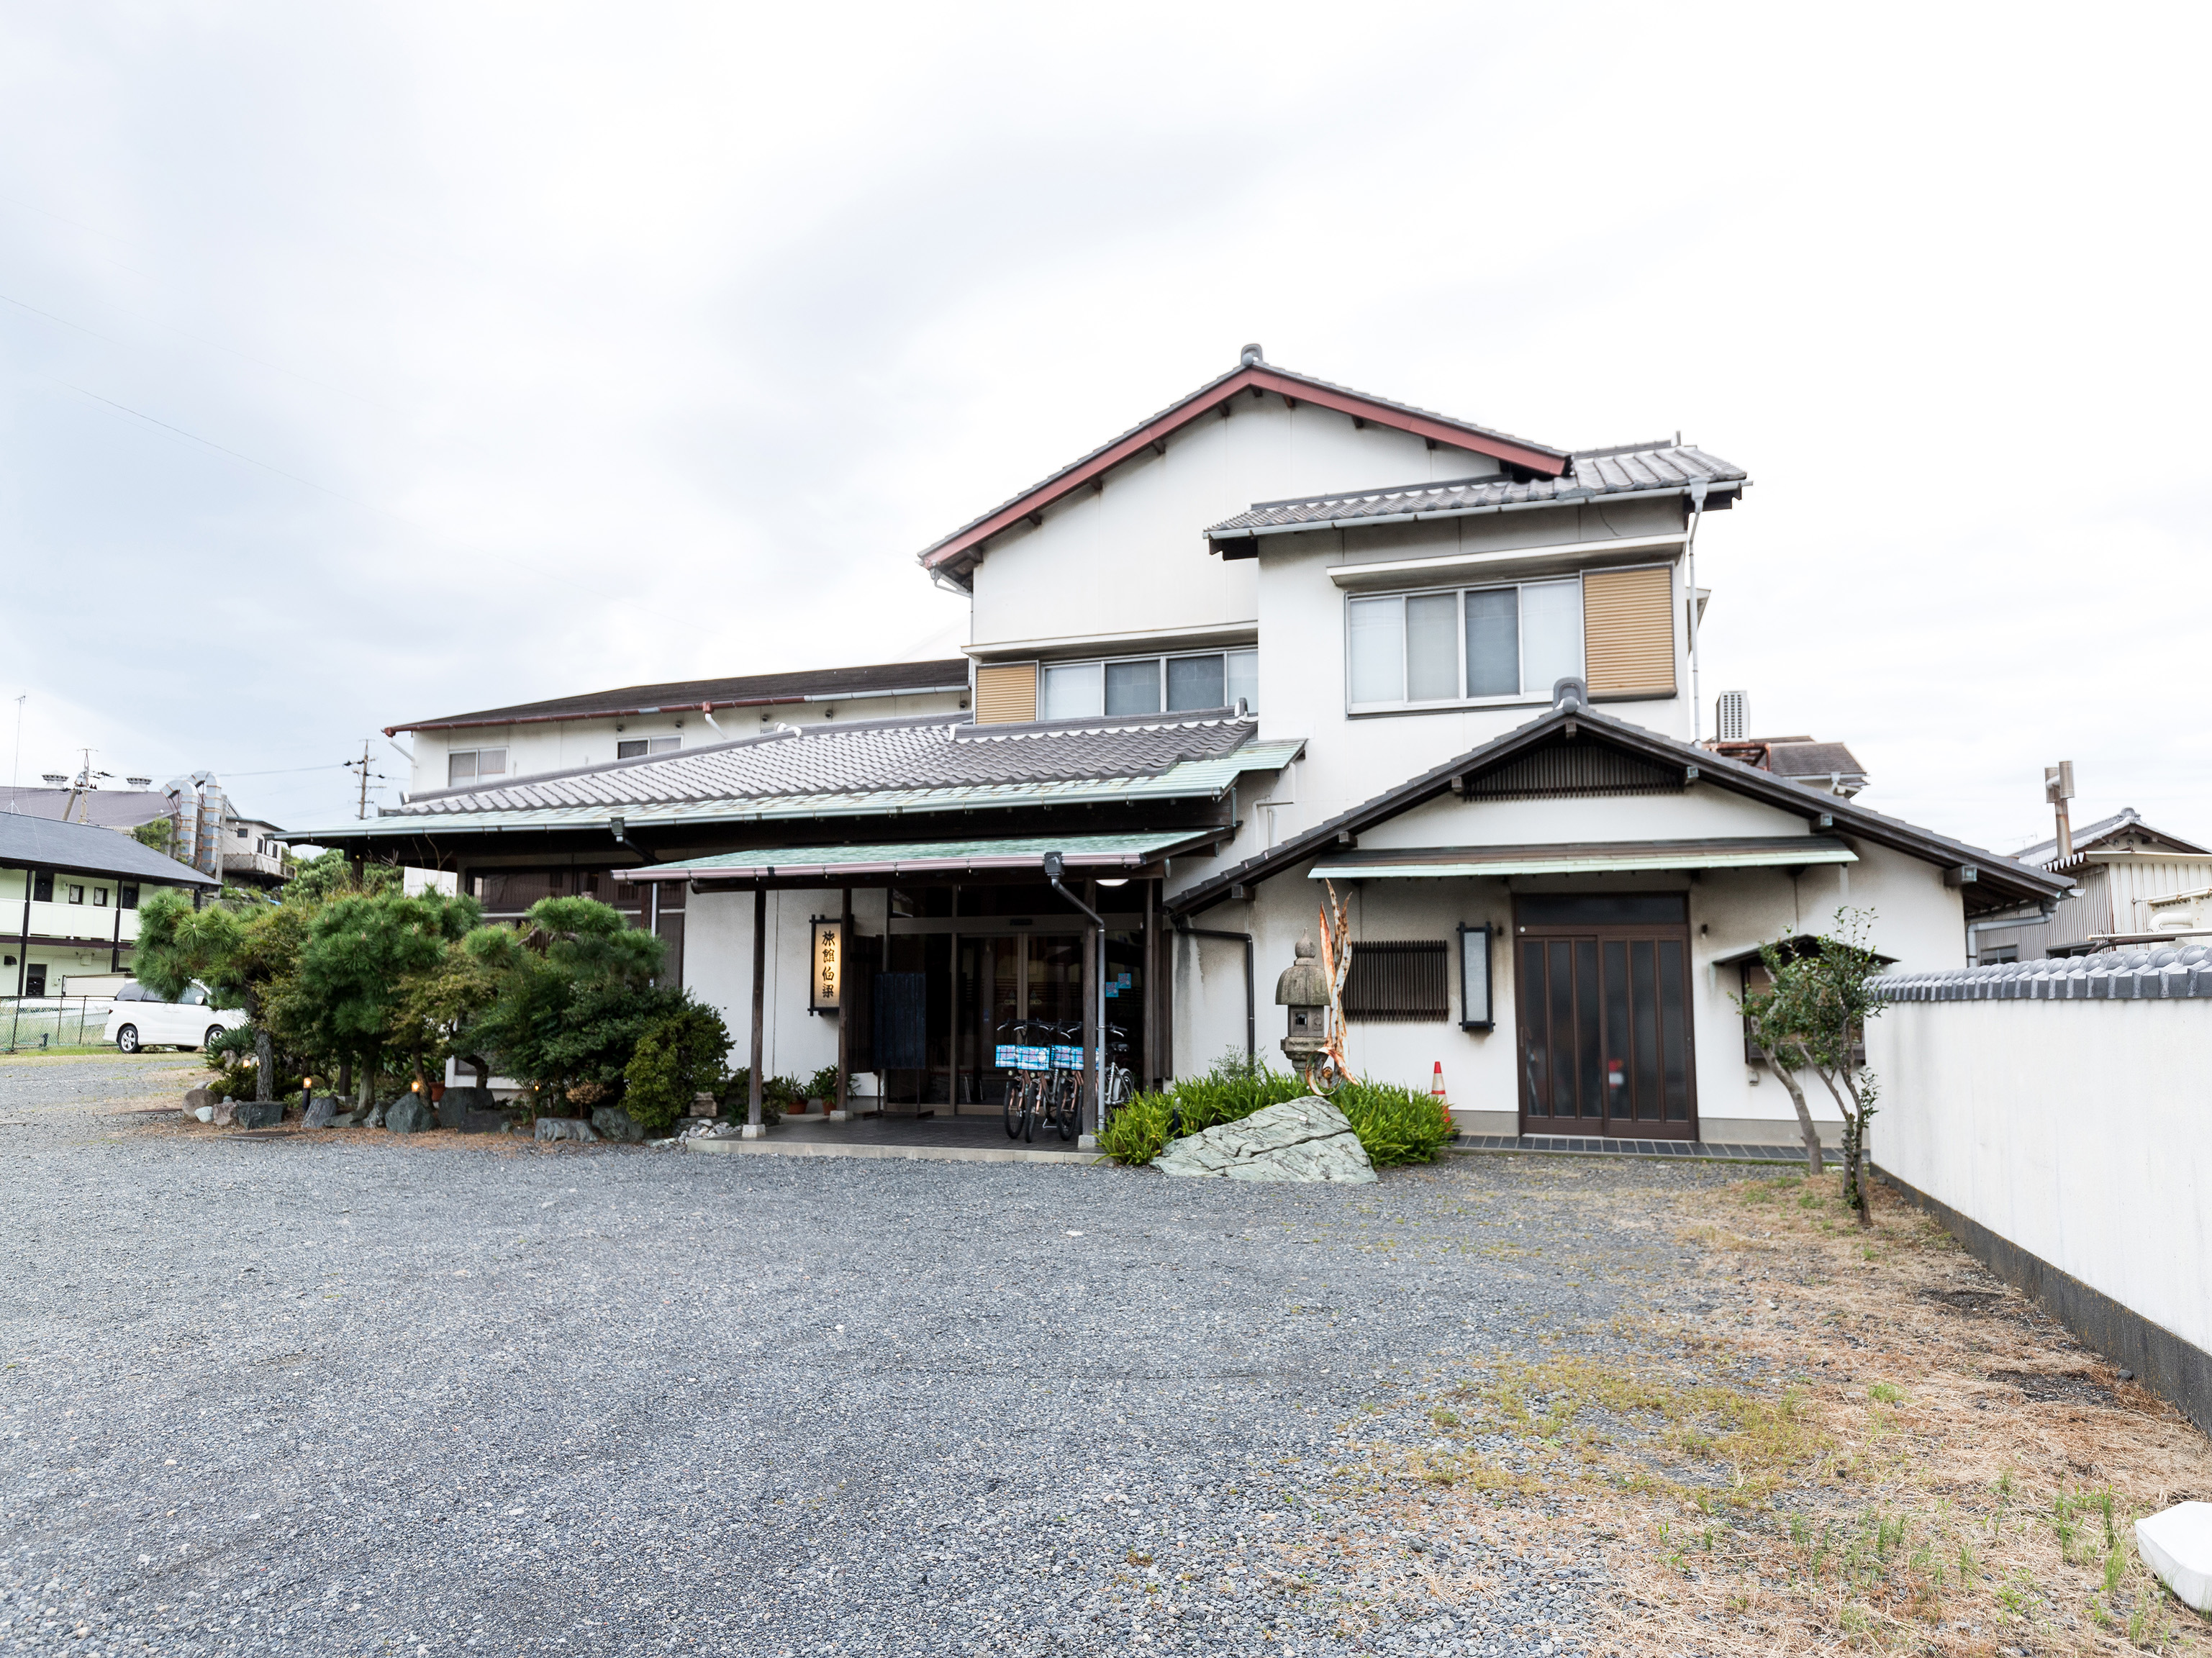 三保松原 日本平のおすすめホテル 人気ランキング 国内旅行特集 トラベルコ